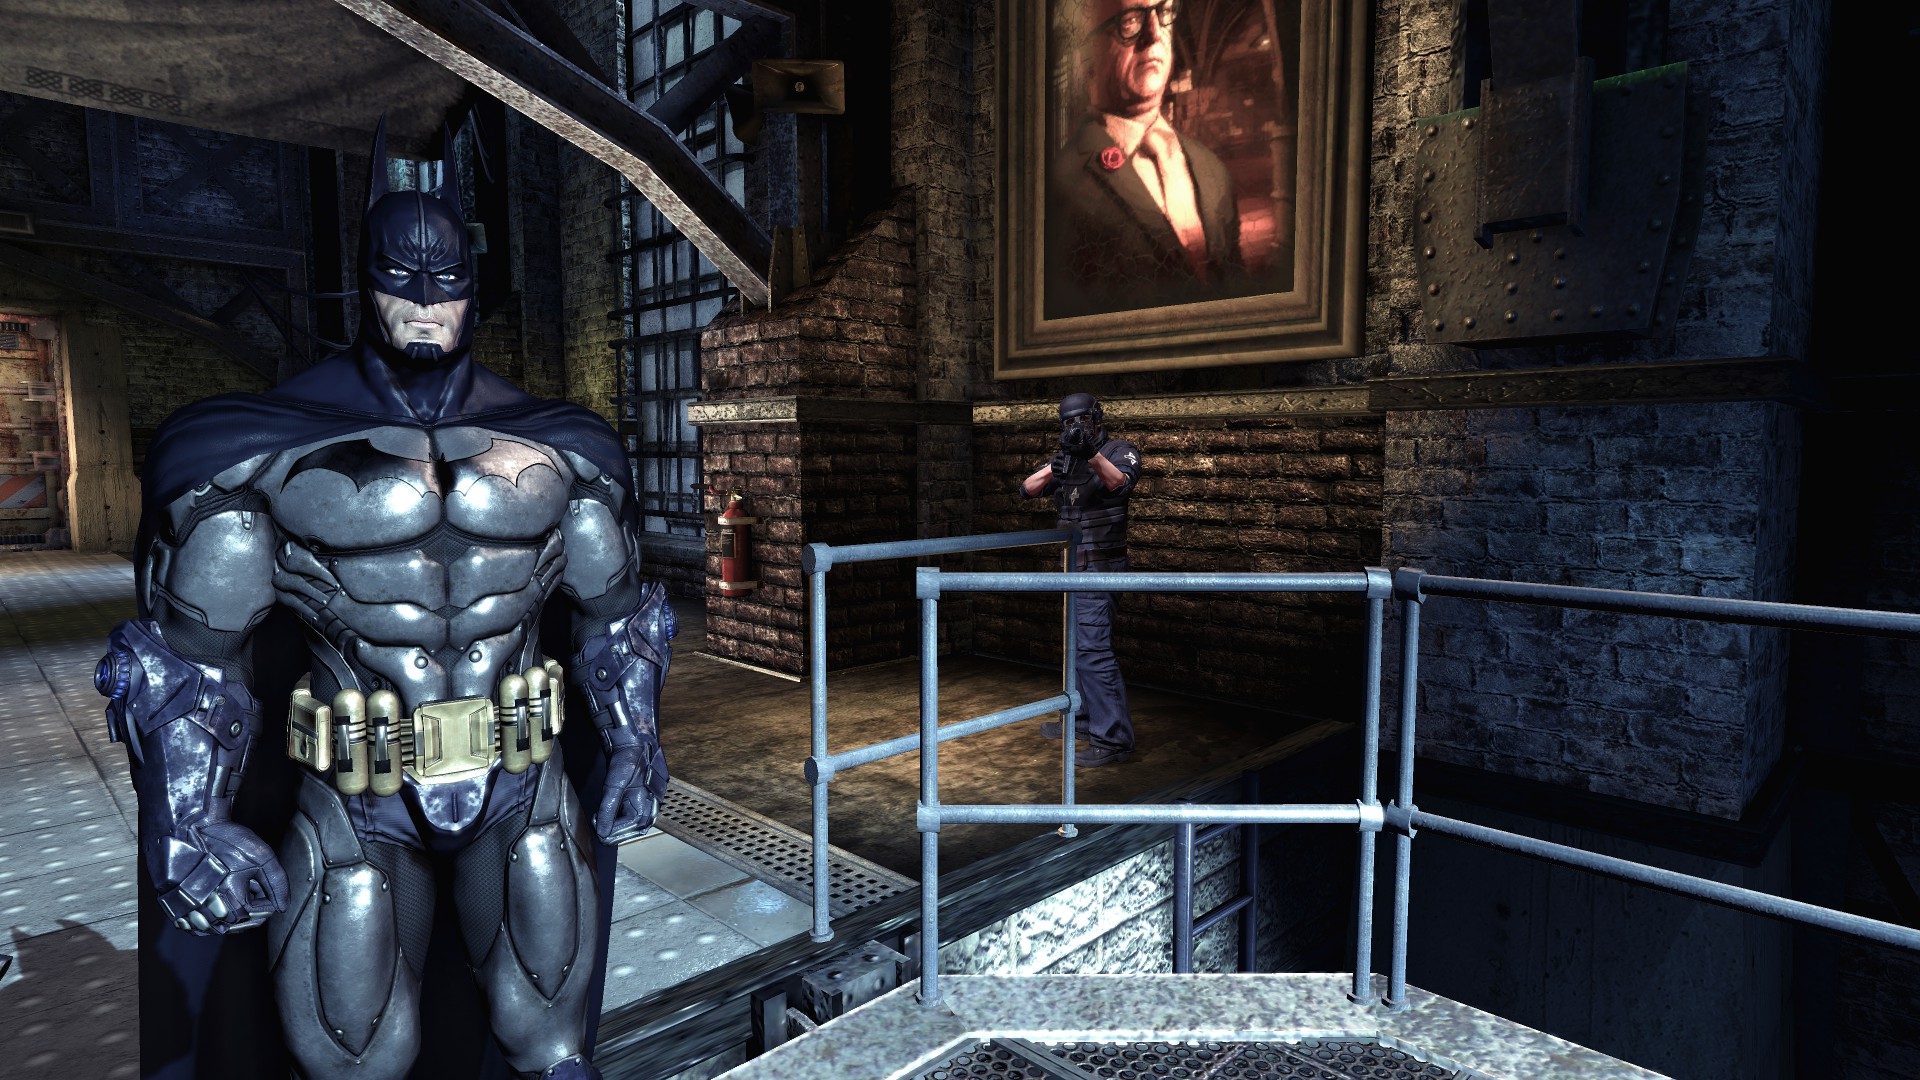 armored batman suit